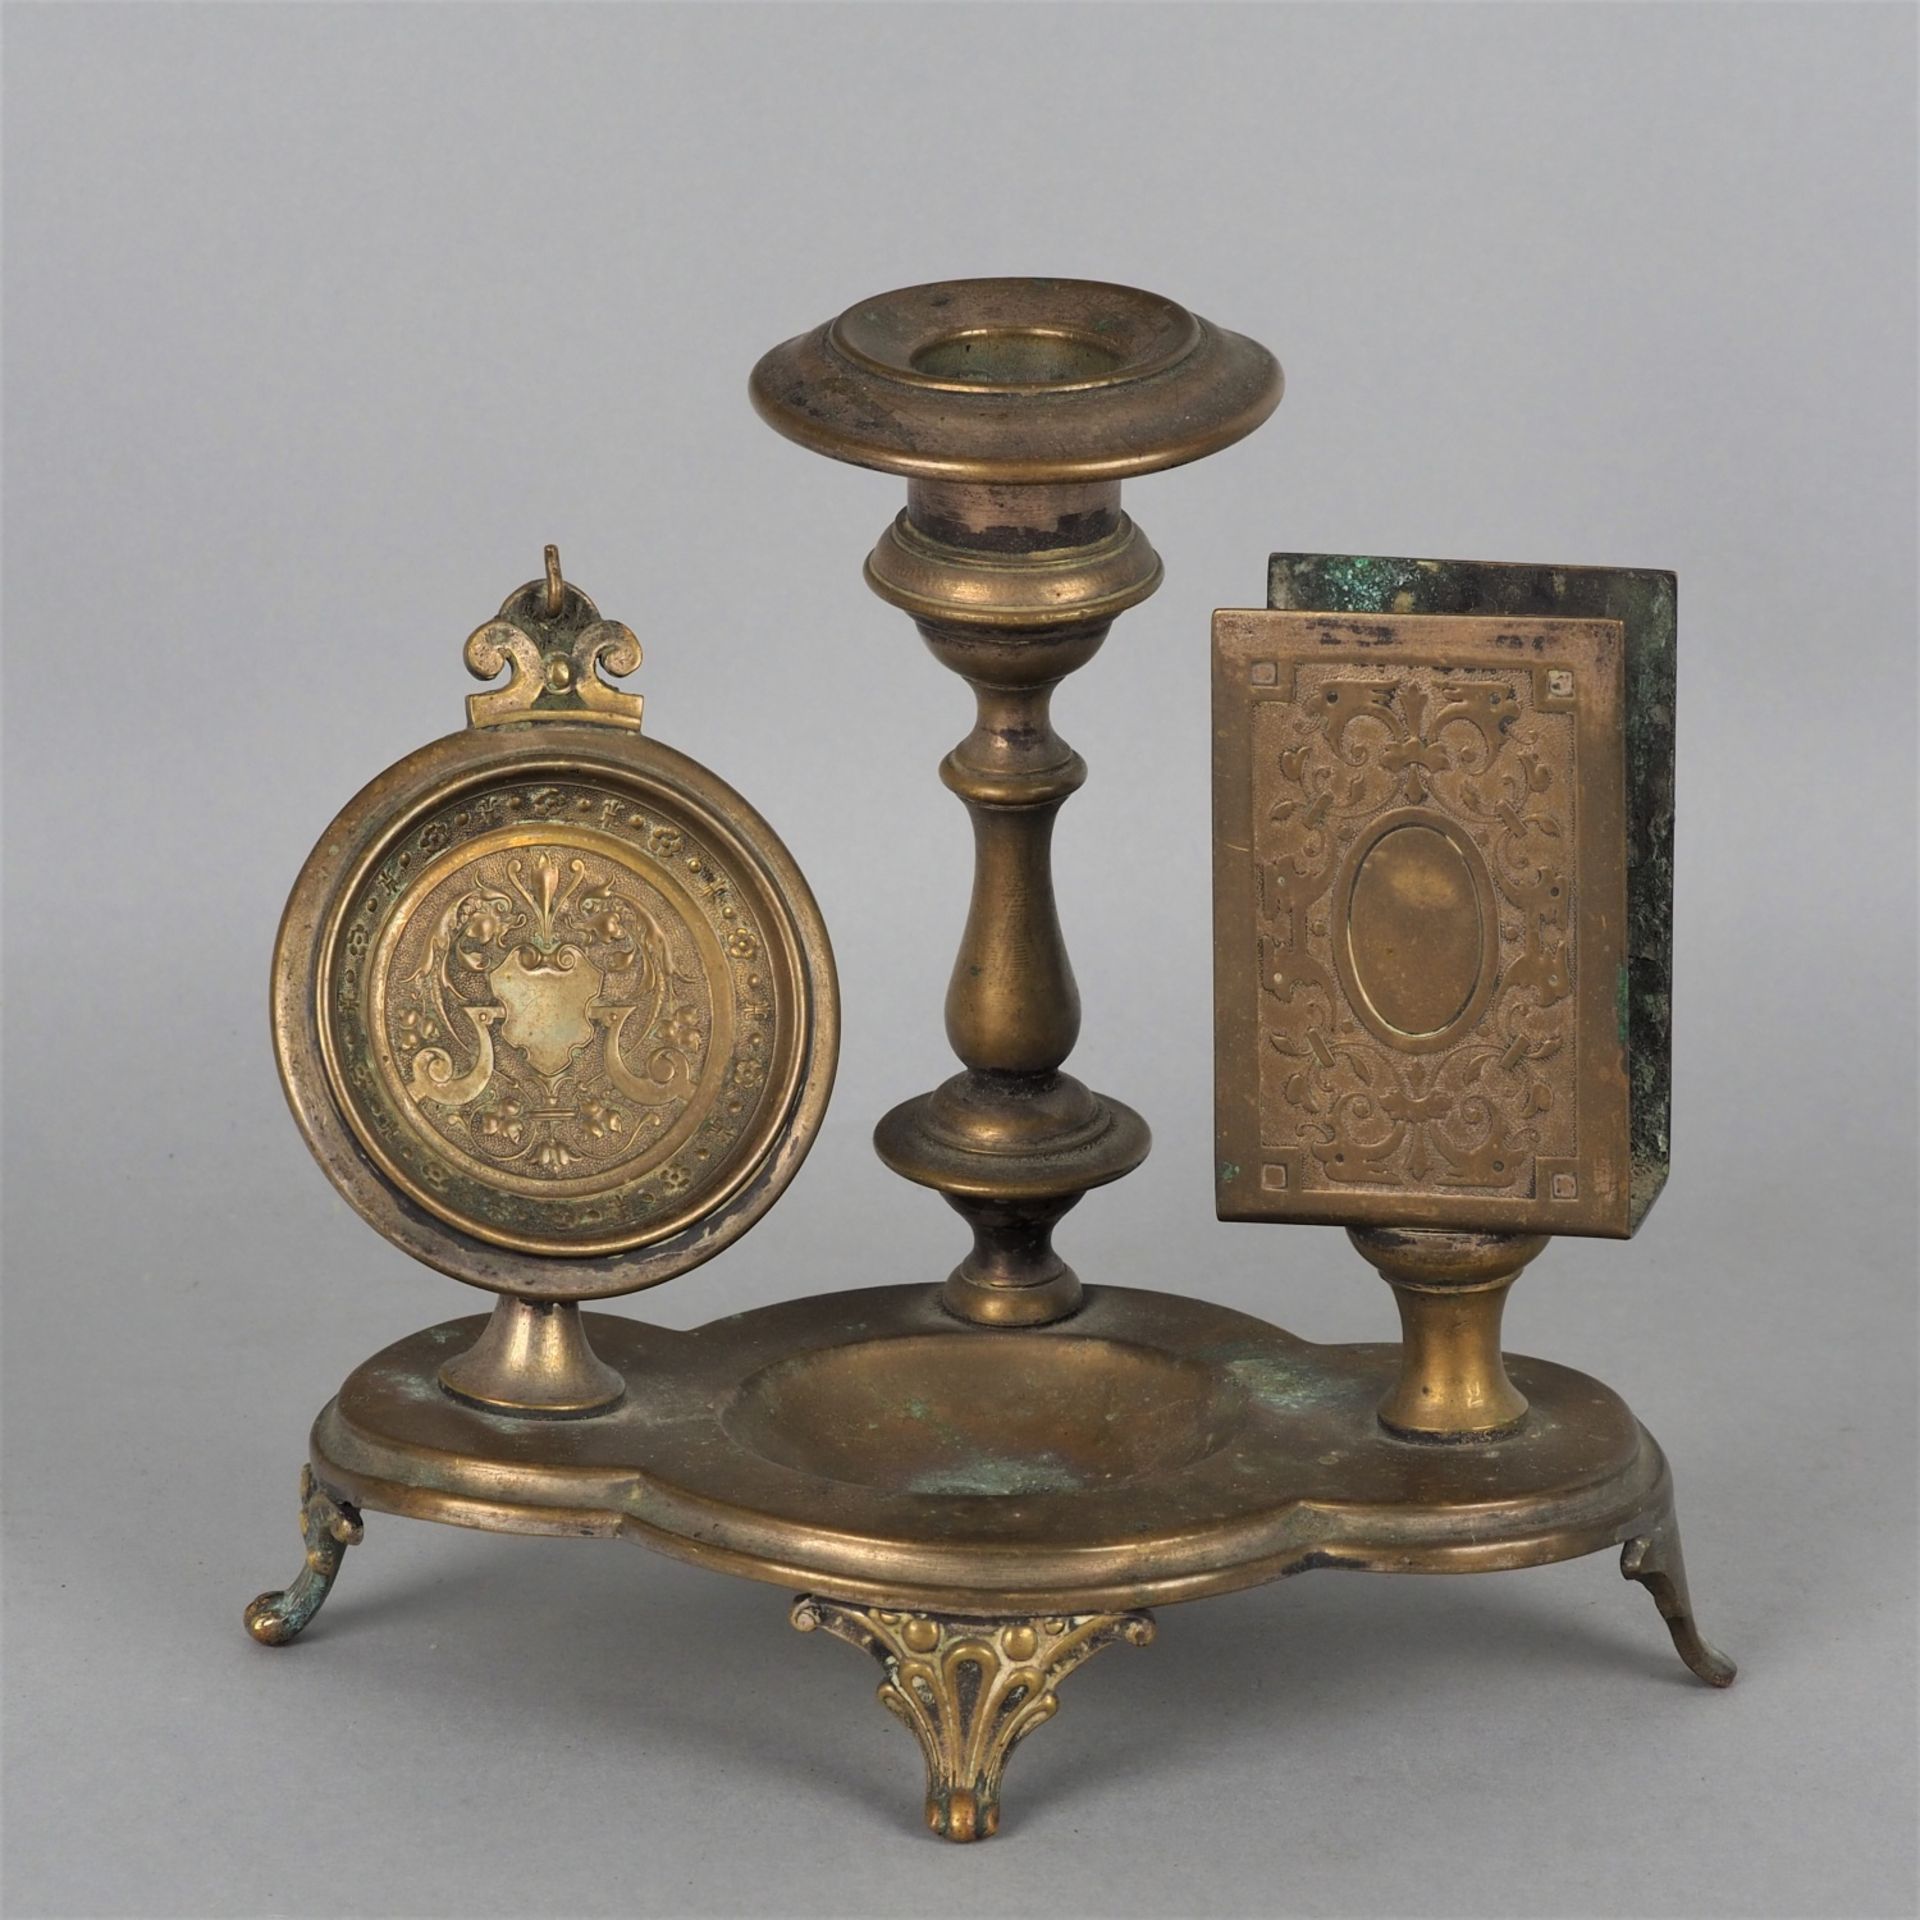 Tischständer für Taschenuhr um 1880